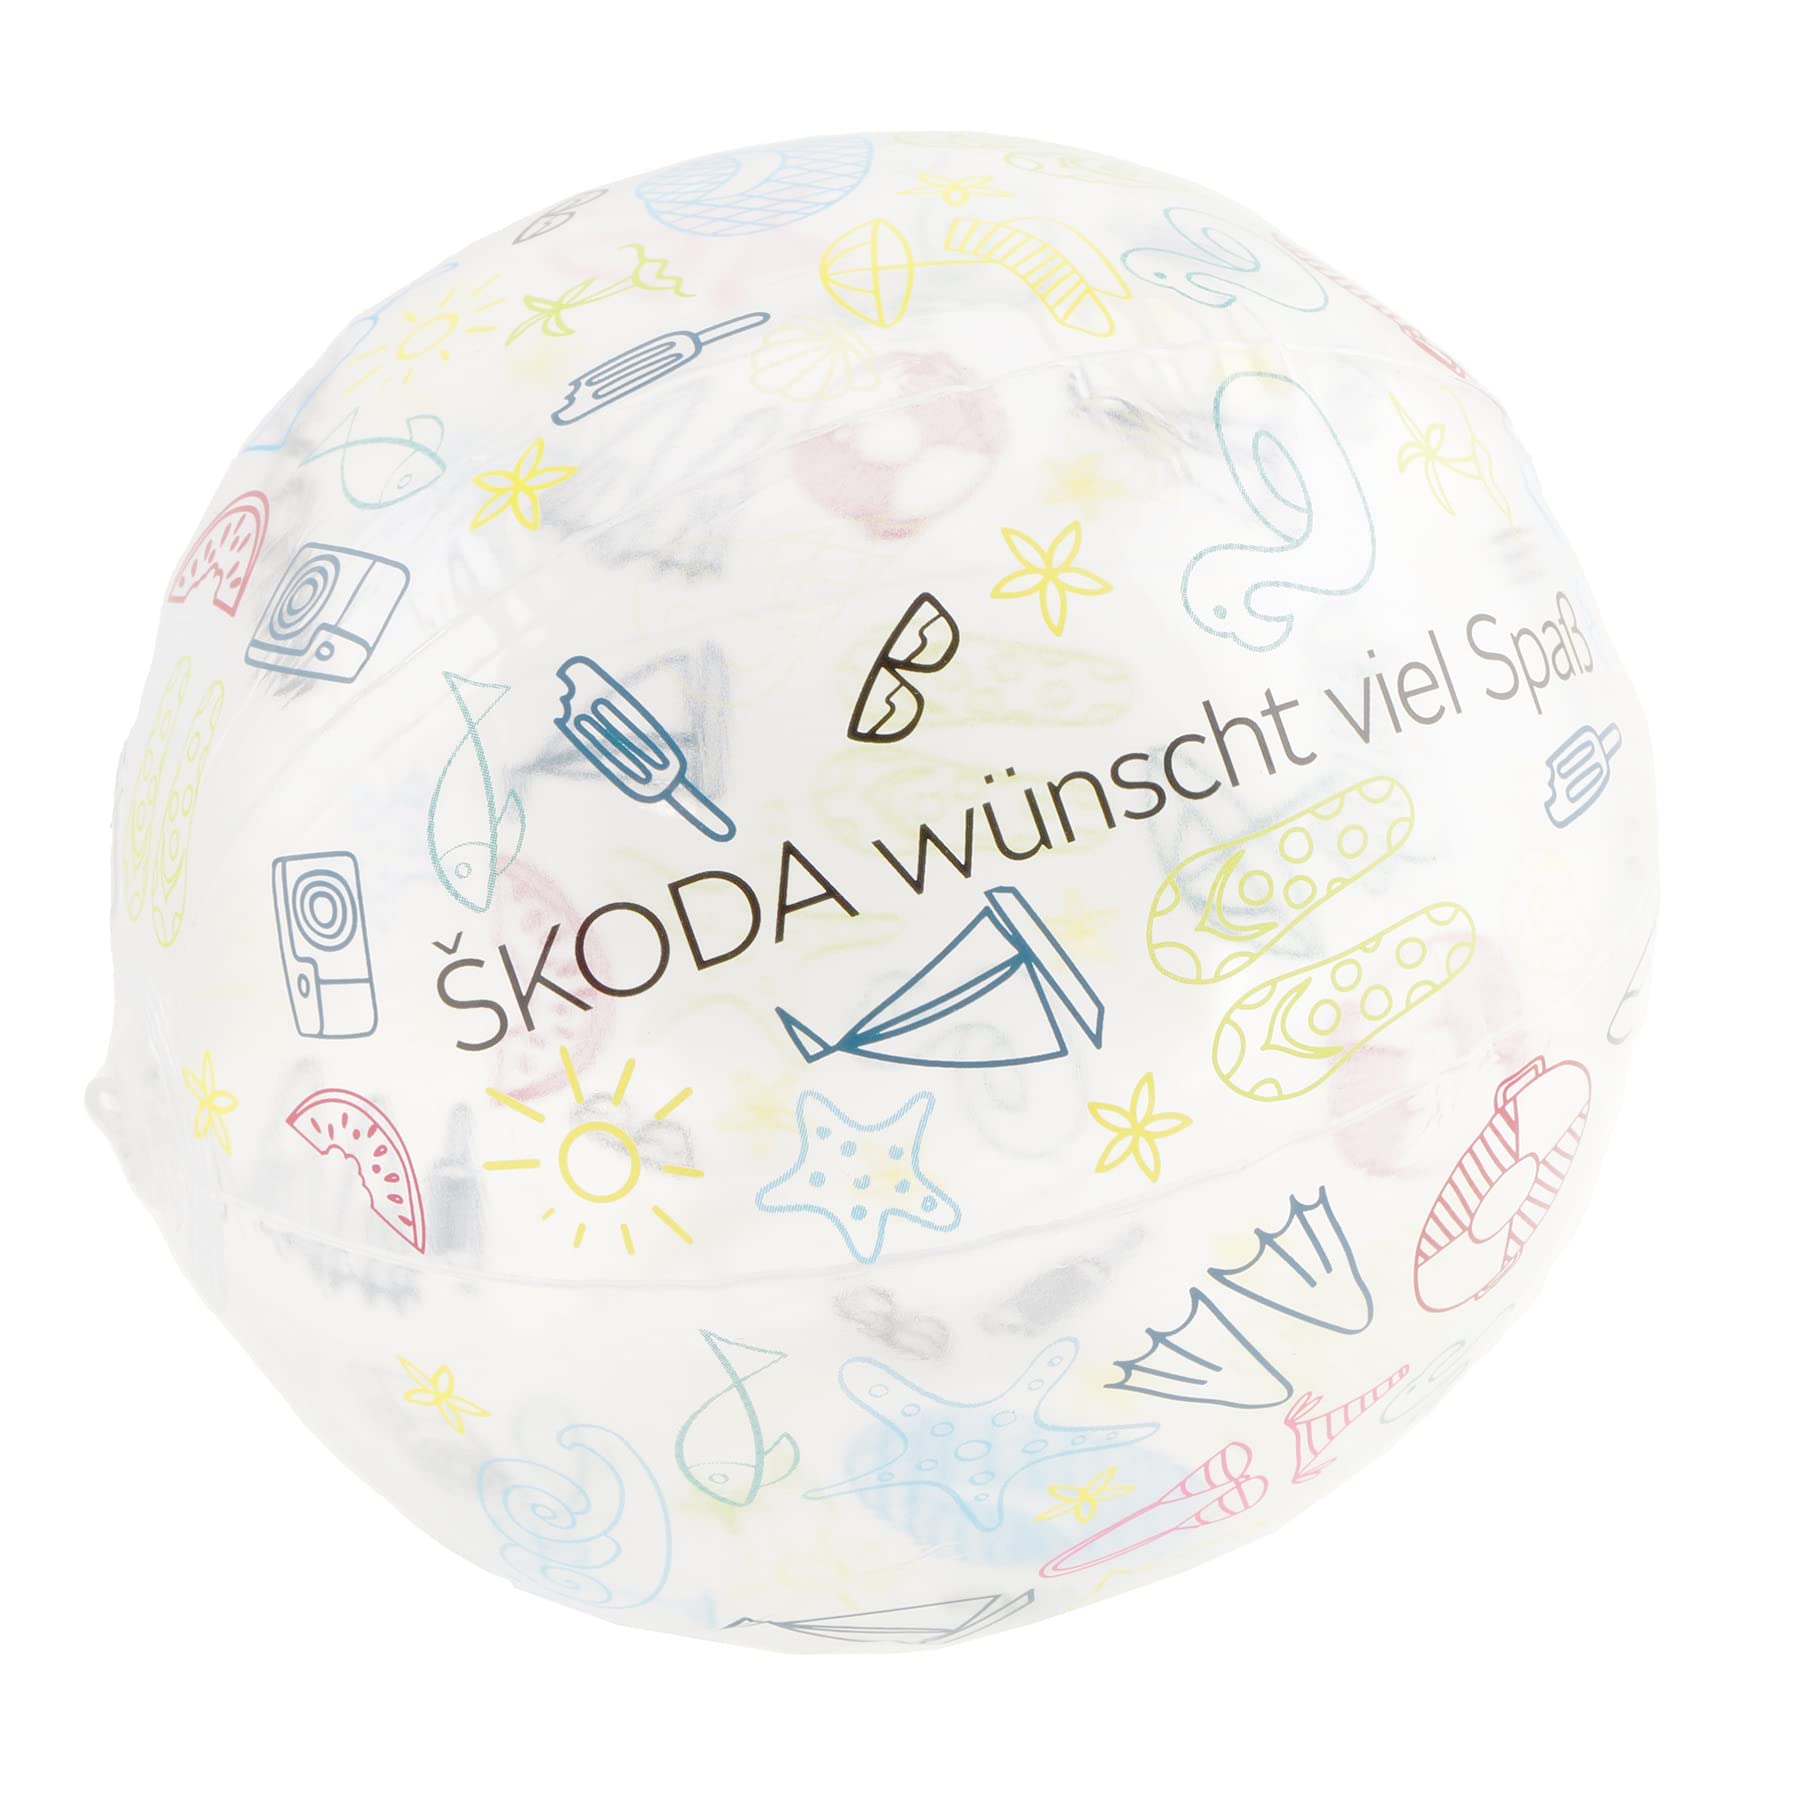 Skoda MVF12-610 Wasserball, aufblasbar, transparent/bunt von Skoda